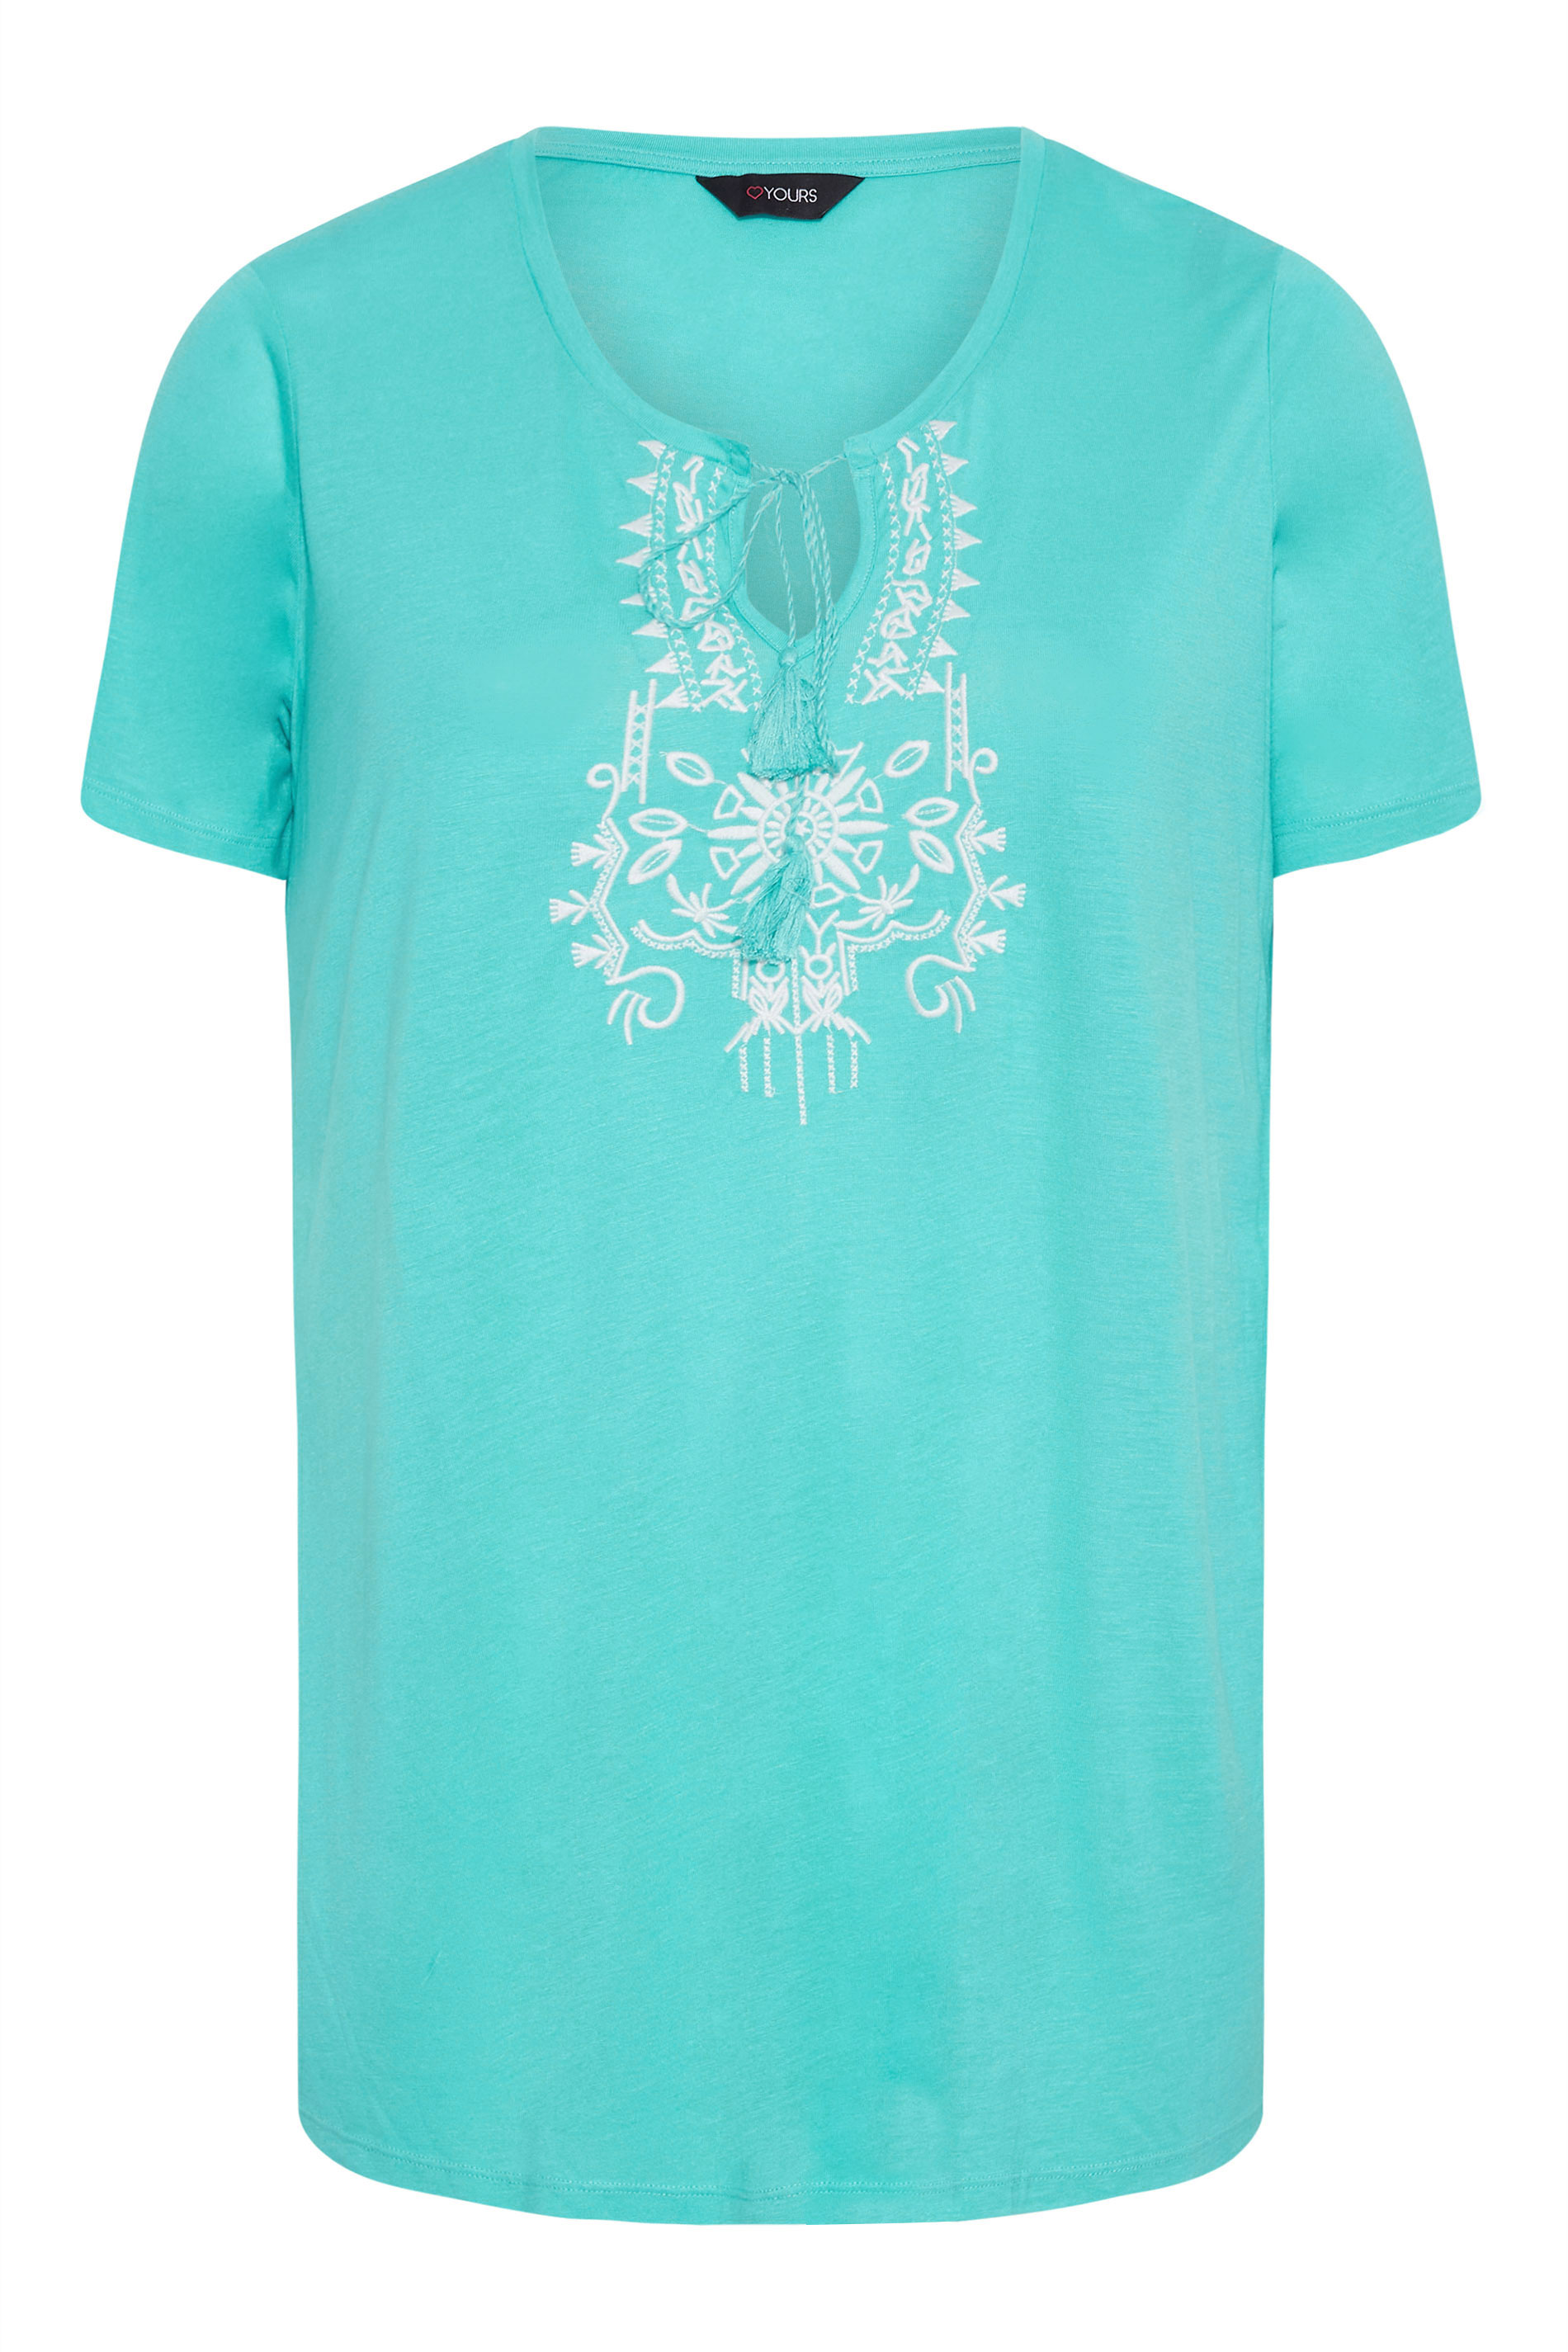 Grande taille  Tops Grande taille  T-Shirts | T-Shirt Bleu Turquoise Brodé Aztèque à Ficelle - SD43850